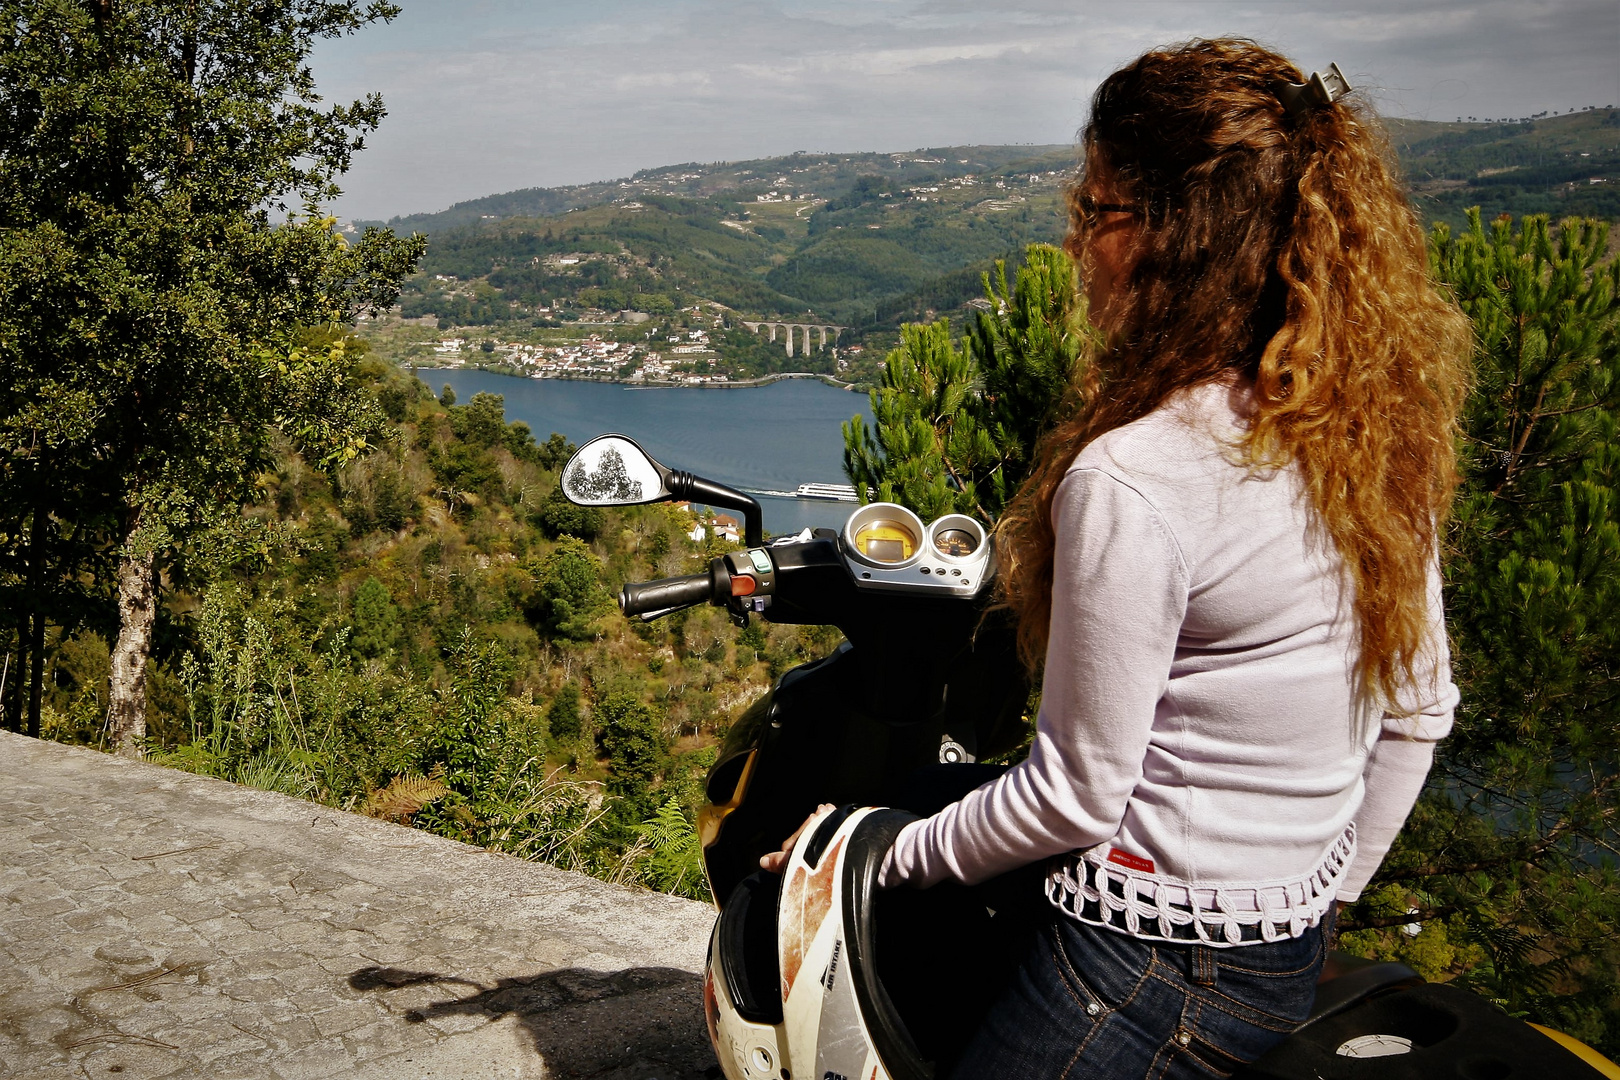 River Douro